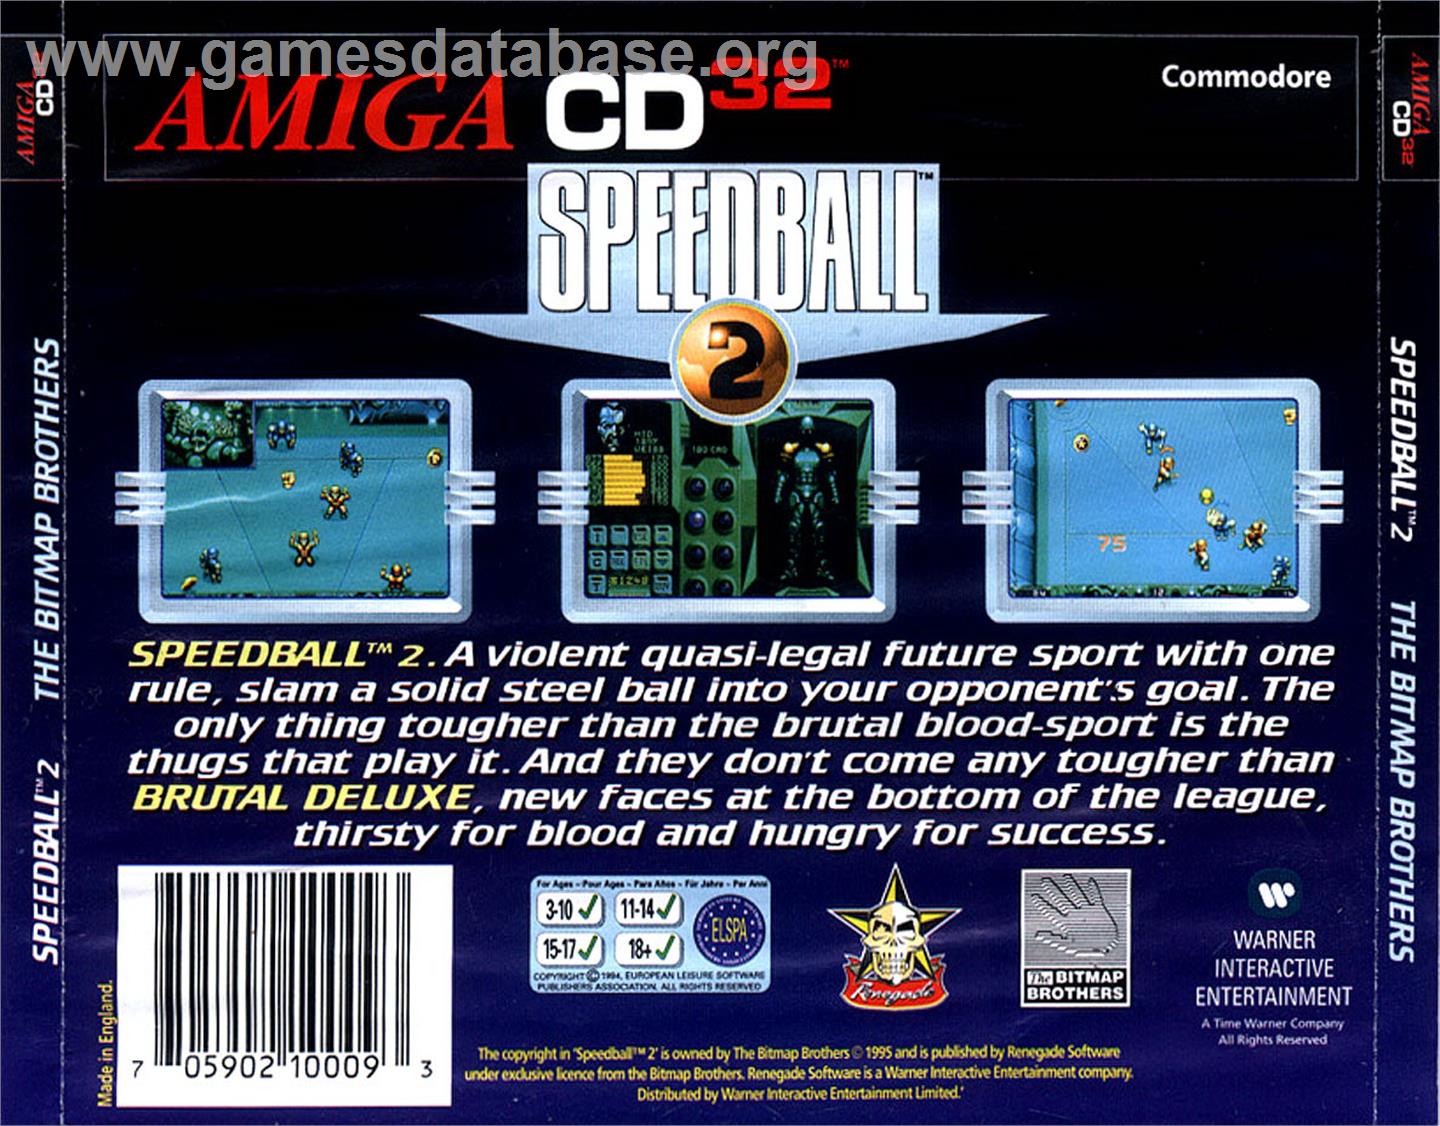 Speedball 2: Brutal Deluxe - Commodore Amiga CD32 - Artwork - Box Back